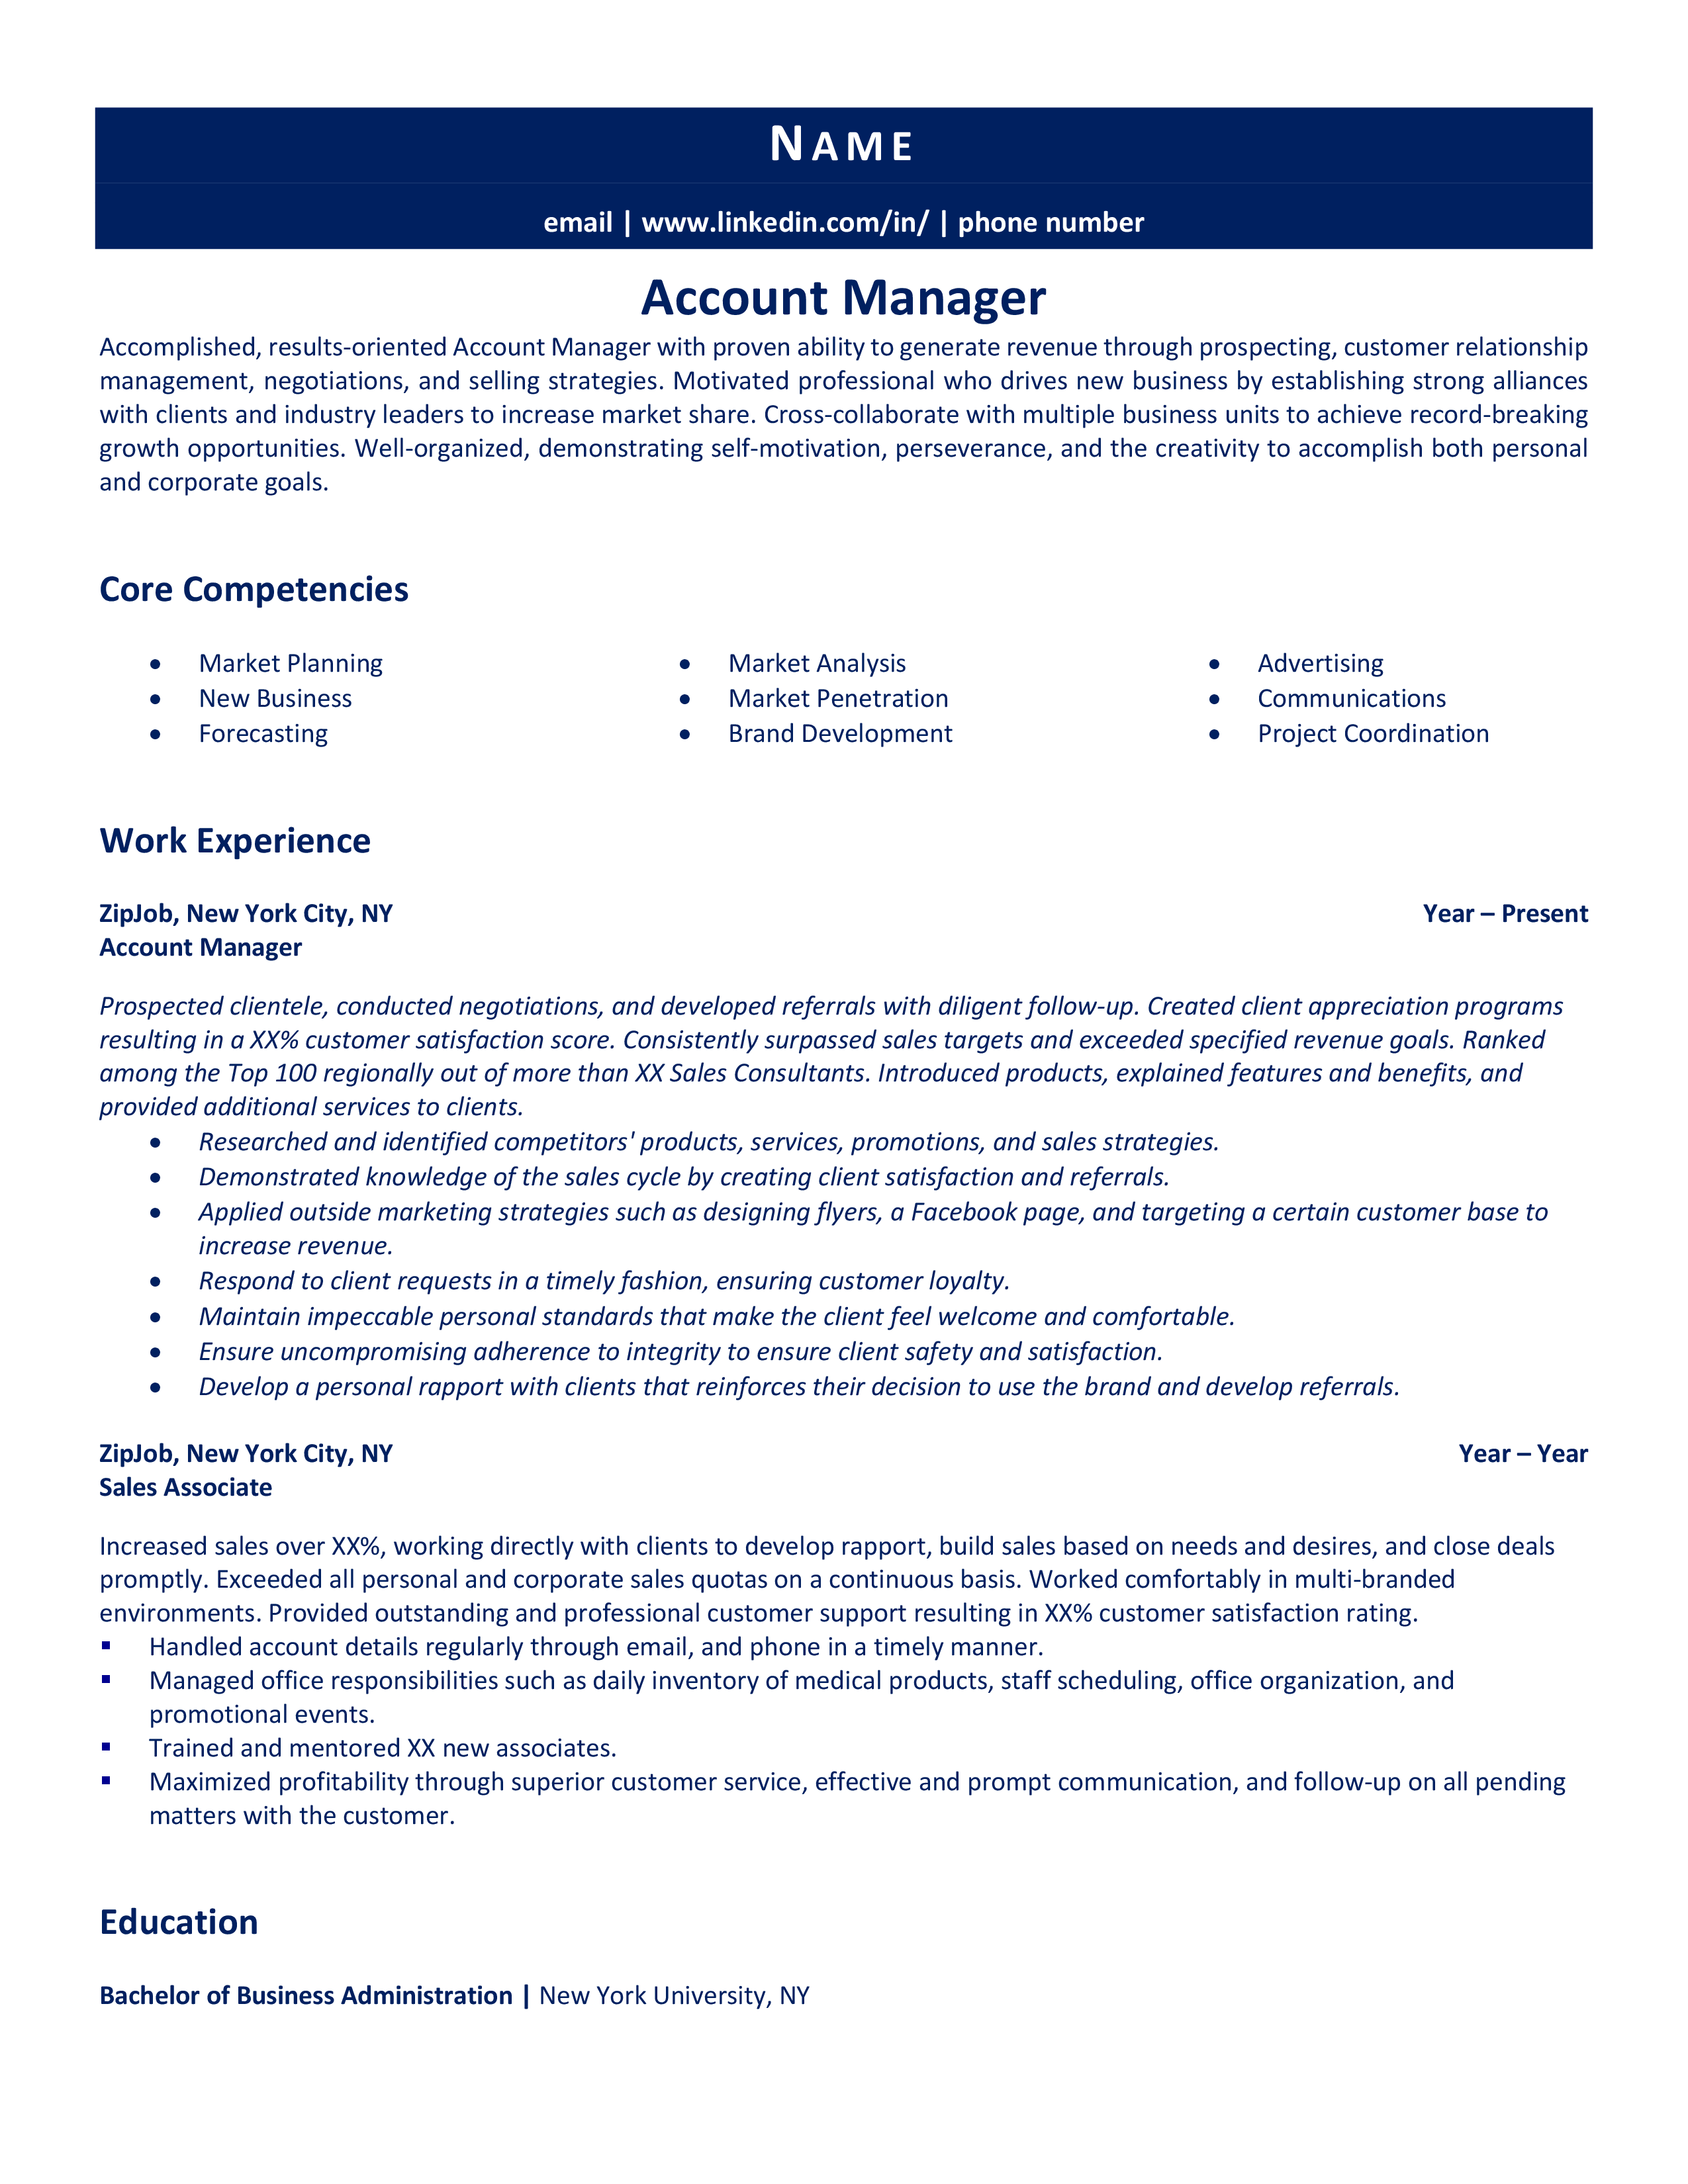 resume star technique for current job description